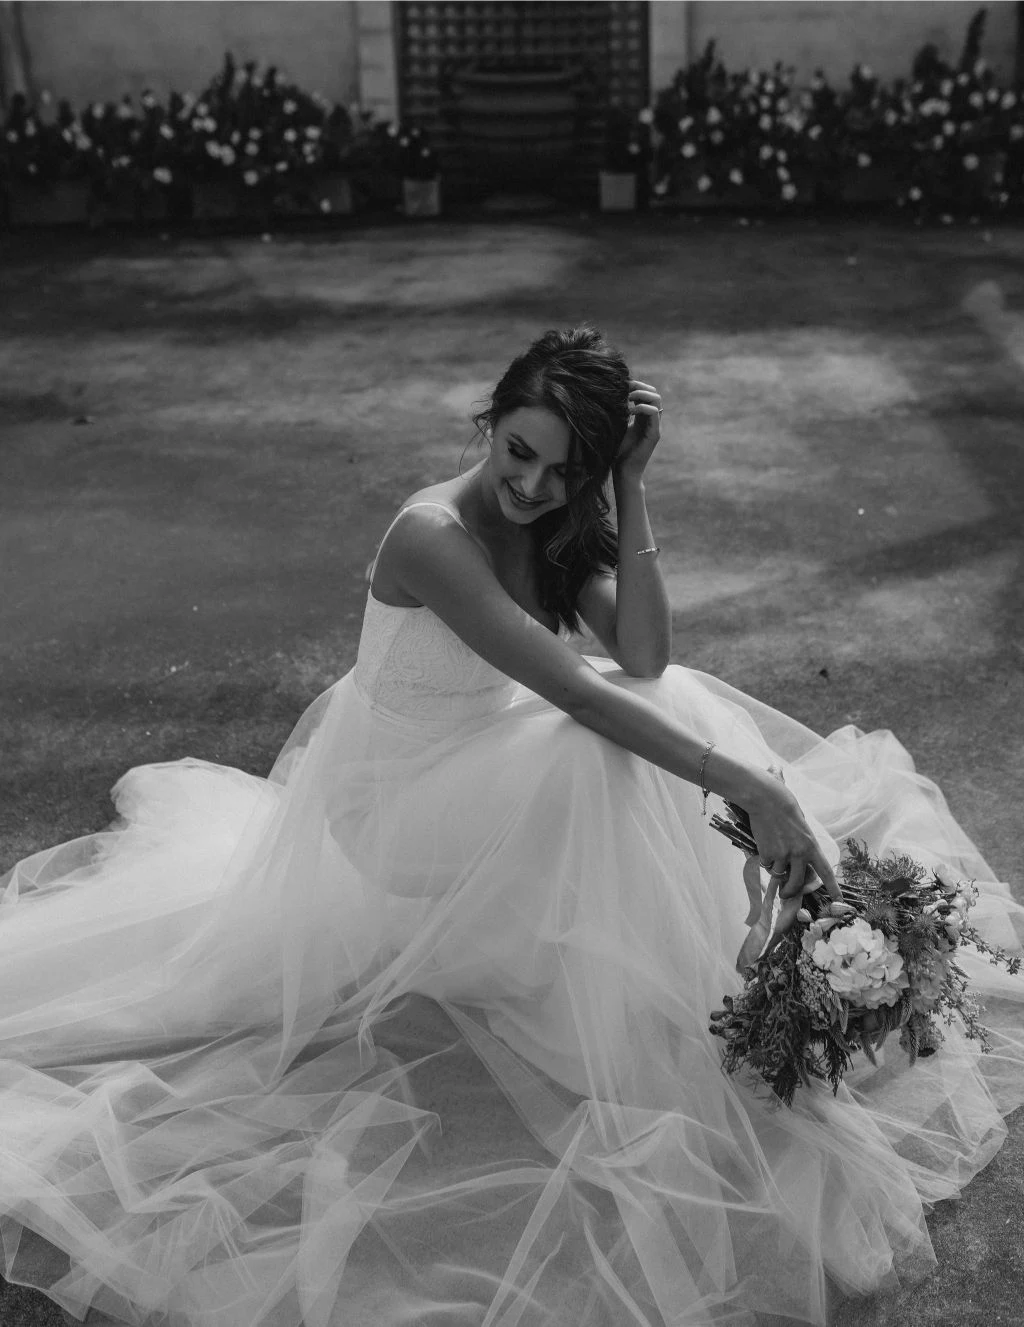 bridal gowns australian designer wedding dresses bridal fashion wedding gowns